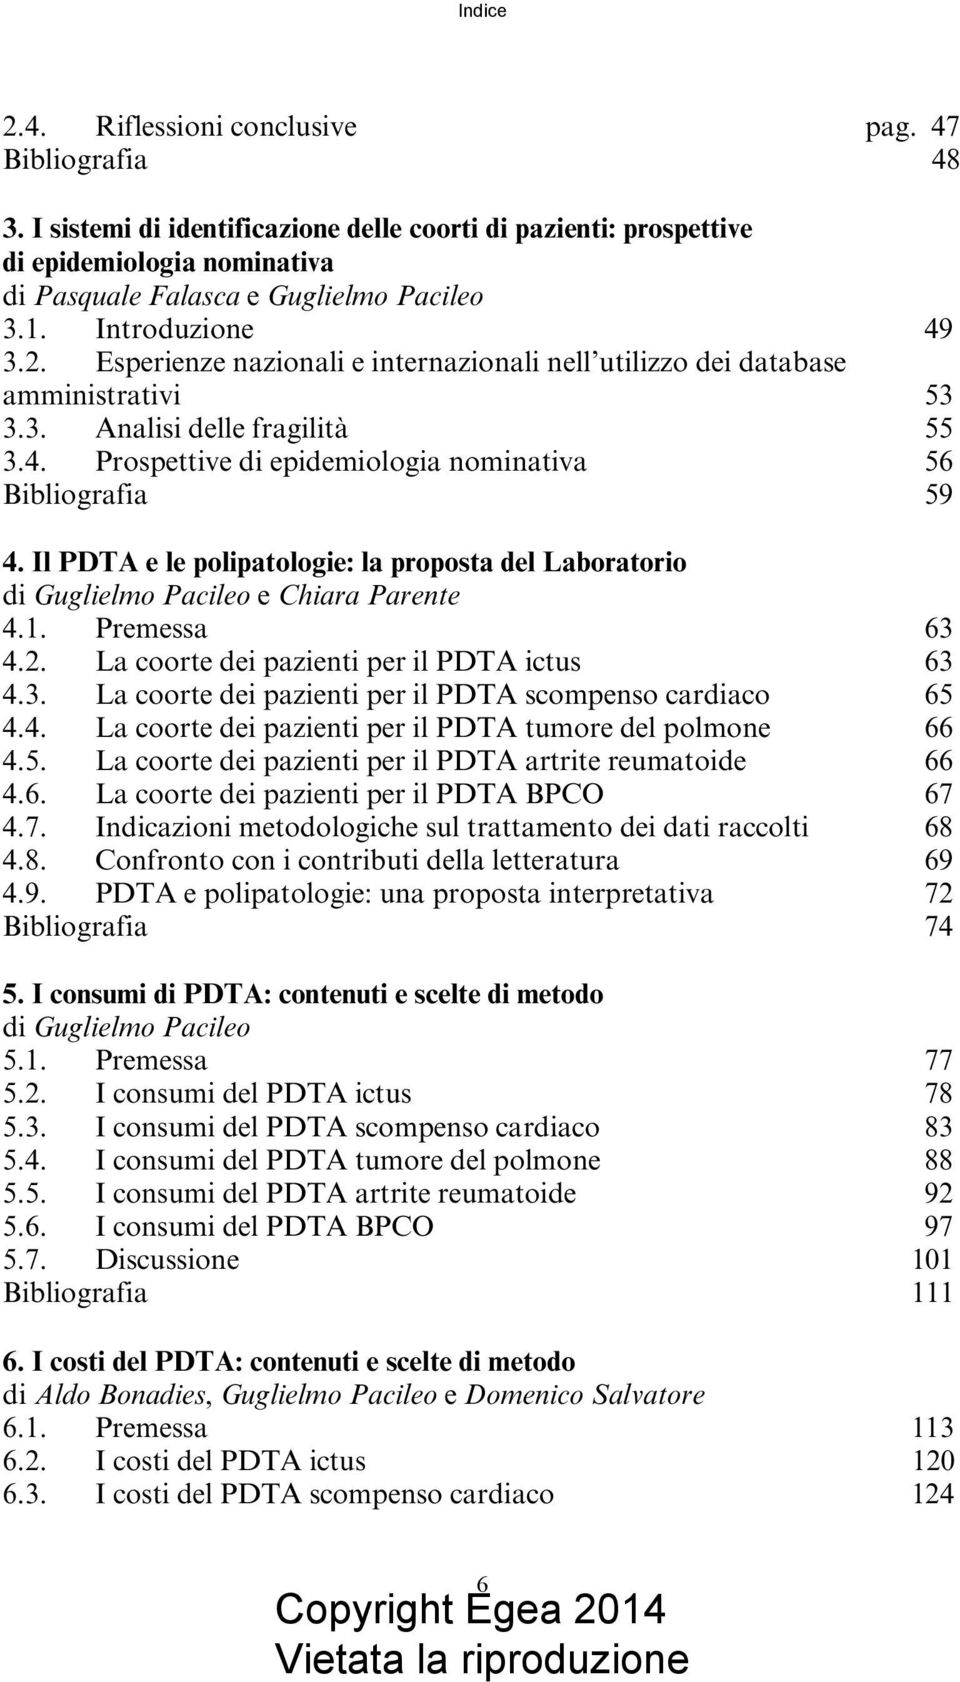 Il PDTA e le polipatologie: la proposta del Laboratorio di Guglielmo Pacileo e Chiara Parente 4.1. Premessa 63 4.2. La coorte dei pazienti per il PDTA ictus 63 4.3. La coorte dei pazienti per il PDTA scompenso cardiaco 65 4.